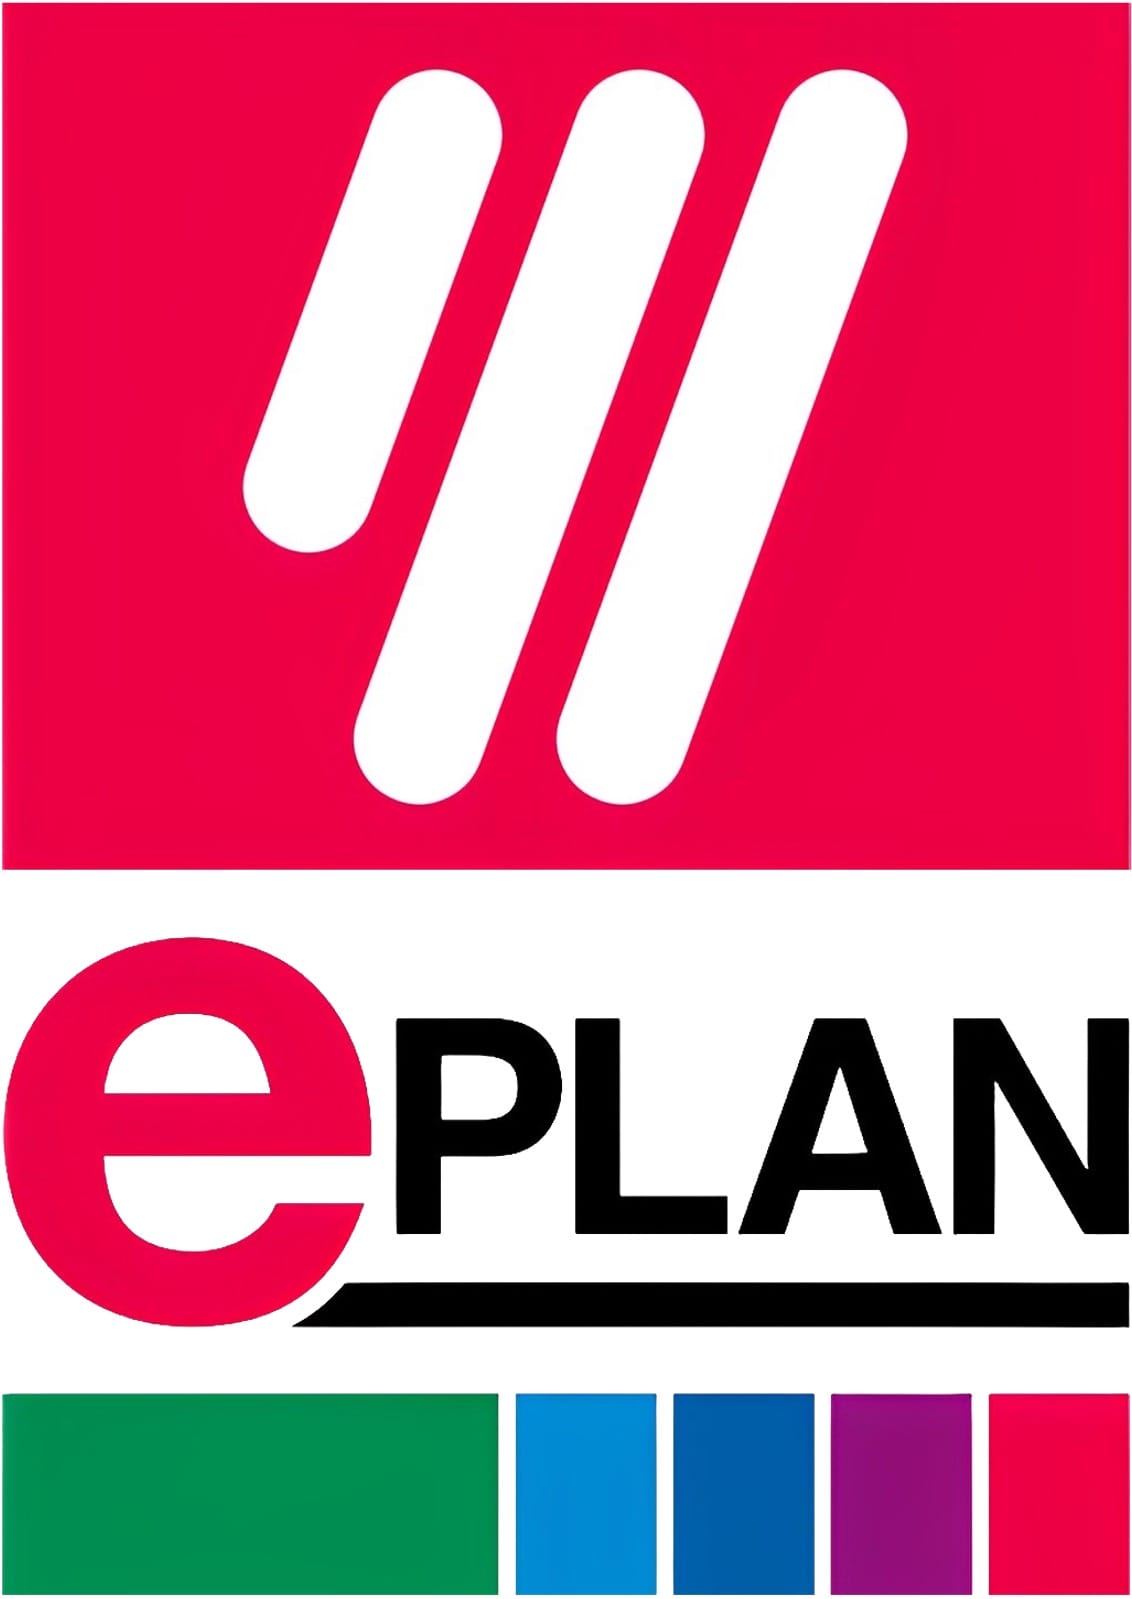 ePLAN logo